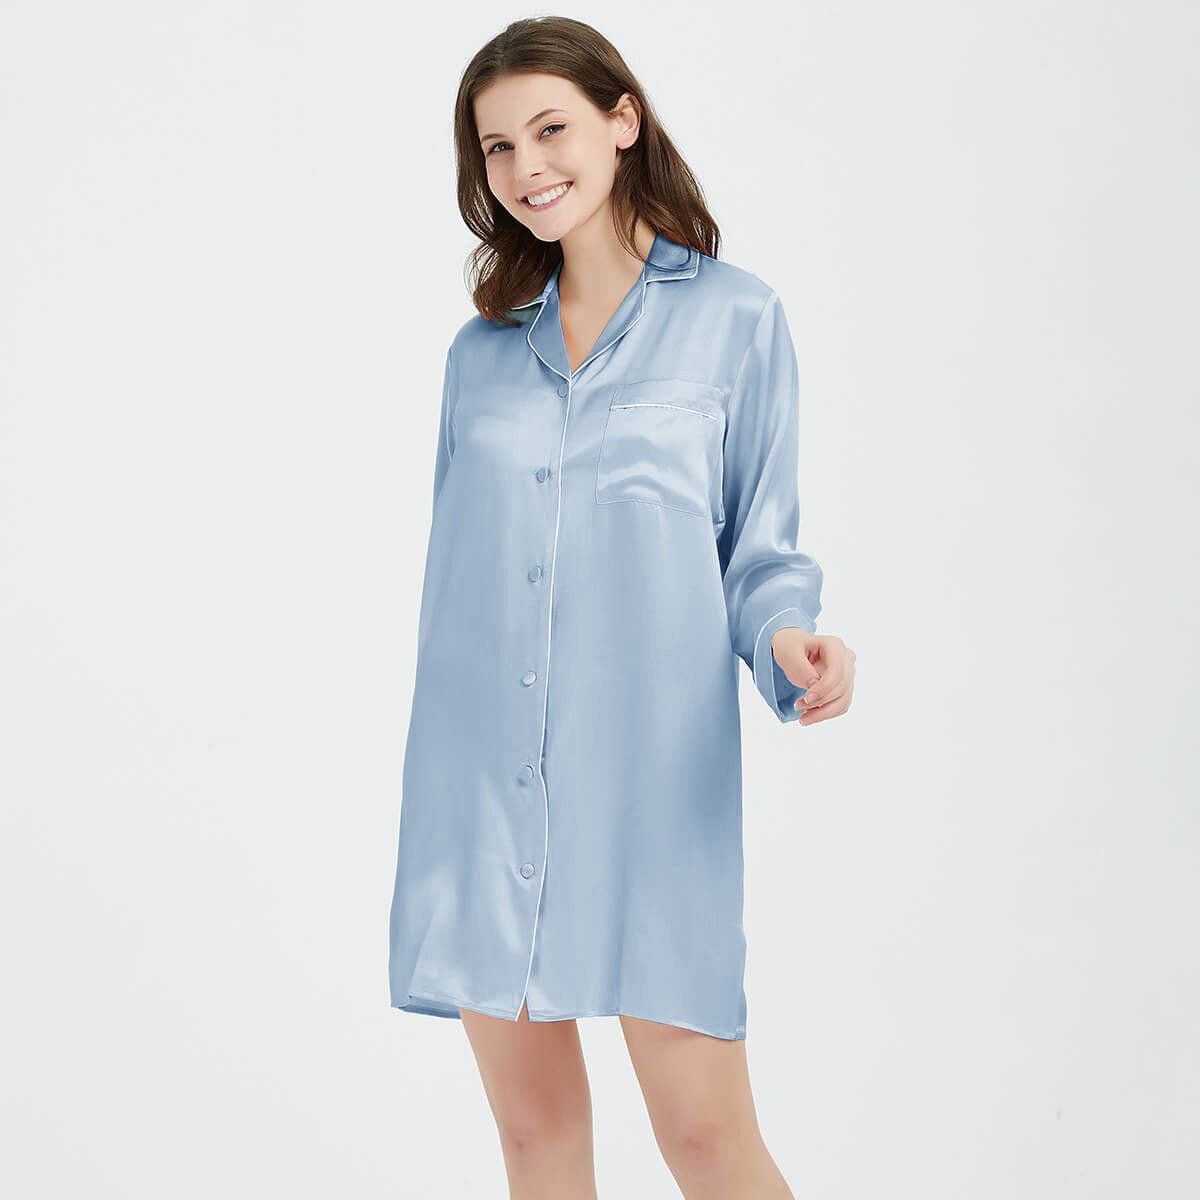 High-Low Style Loose Silk Sleep Shirt  Silk sleepwear, Women nightwear  dresses, Night wear dress